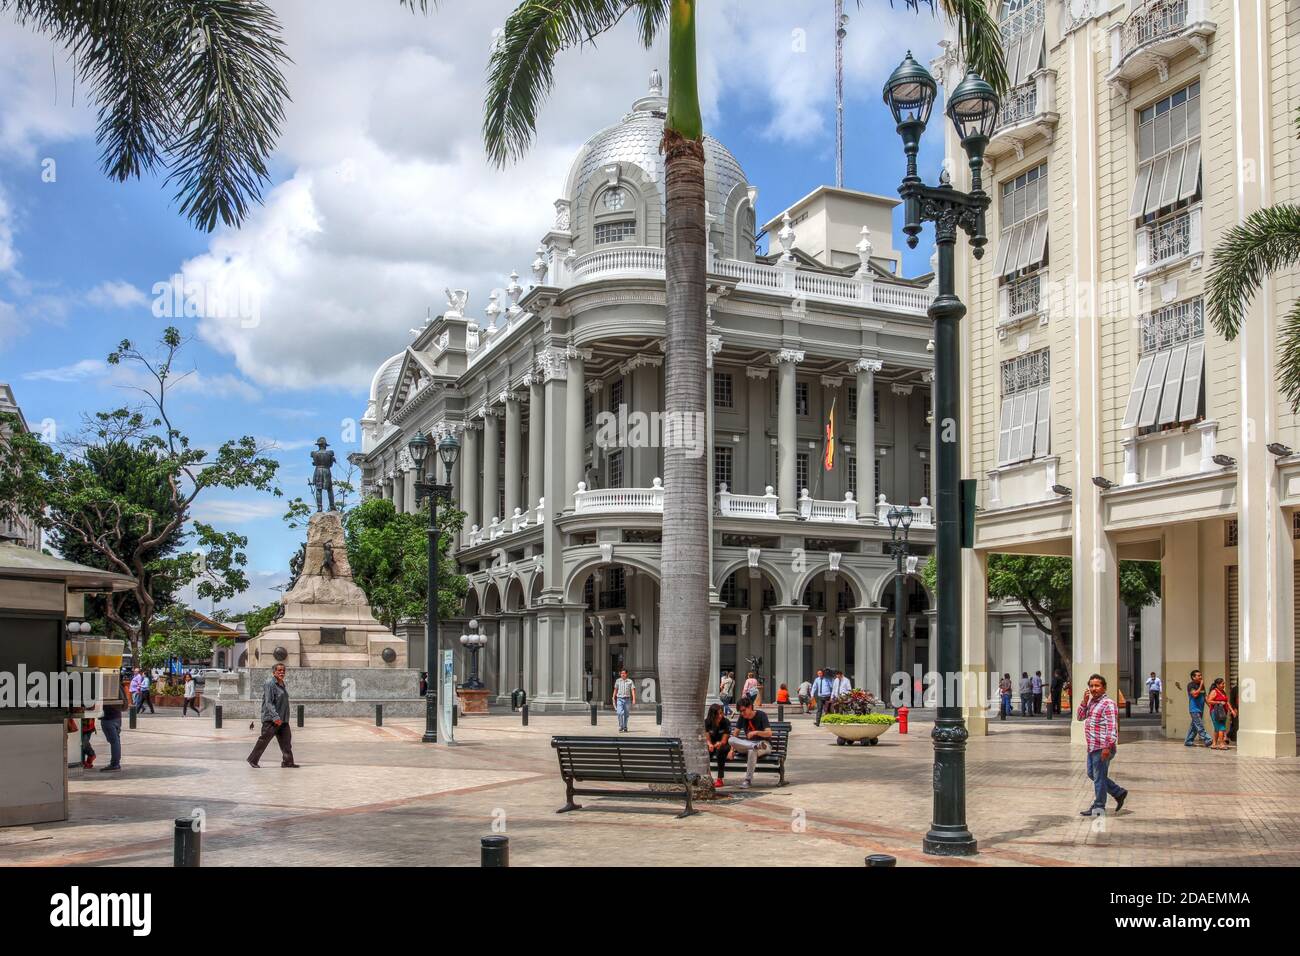 Straßenszene in der Innenstadt von Guayaquil mit dem Stadtpalast und dem Rathaus aus dem Jahr 1920 im modernen Renaissance-Stil. Stockfoto